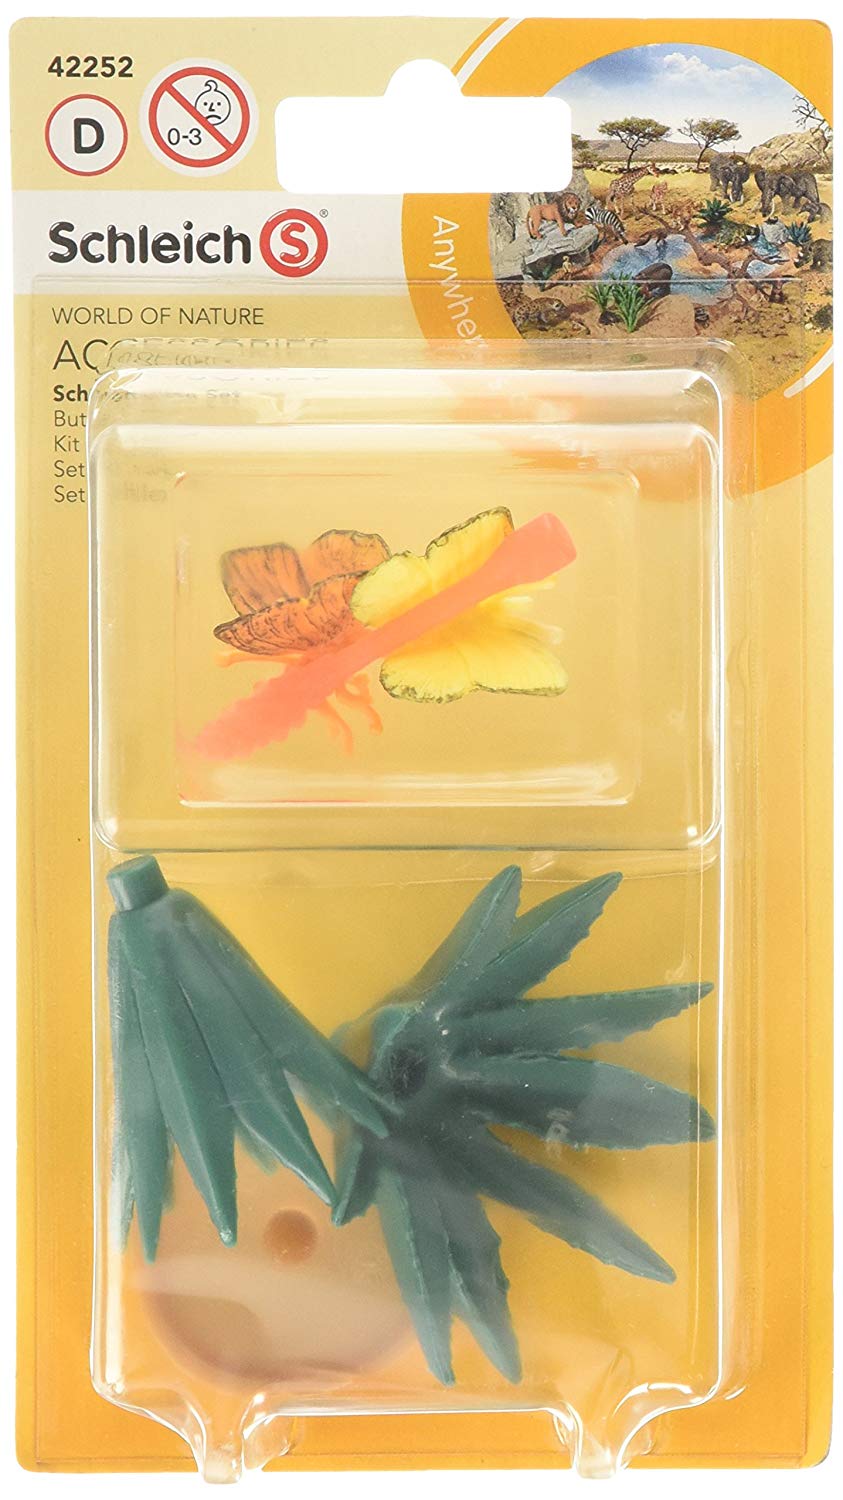 Schleich 42252 Toy Figure Accessories Butterfly Set